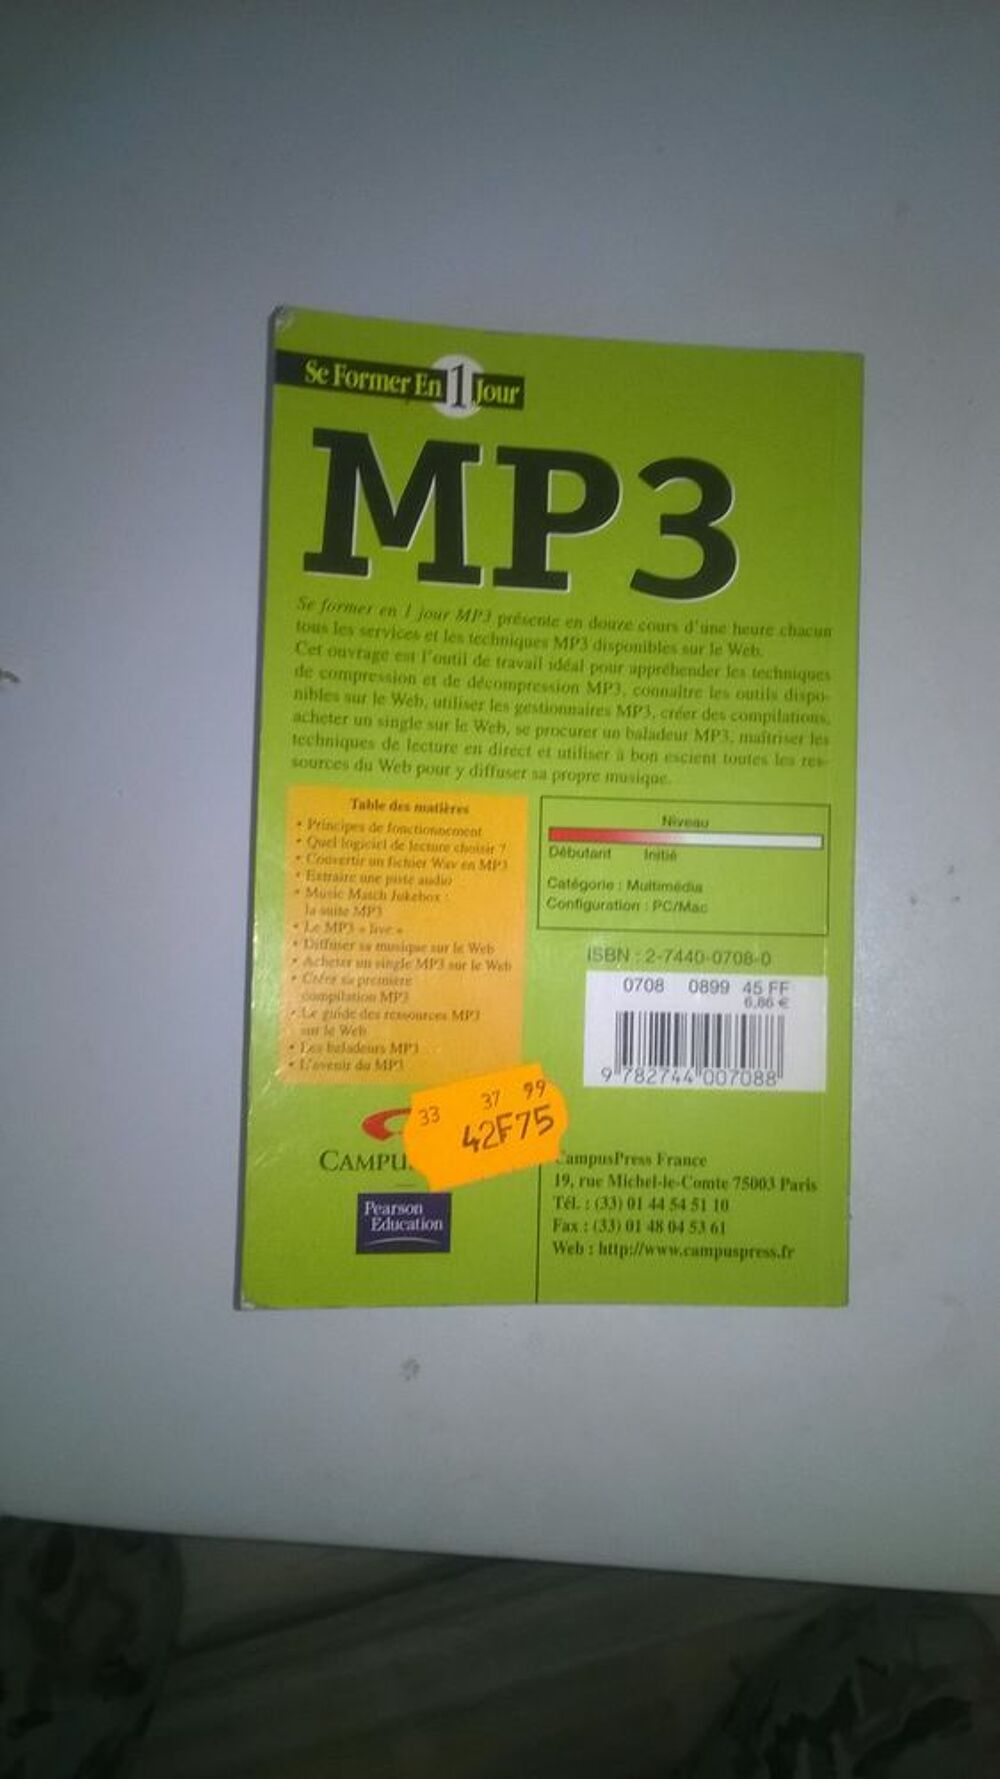 Livre MP3
Olivier Deforge
Livres et BD